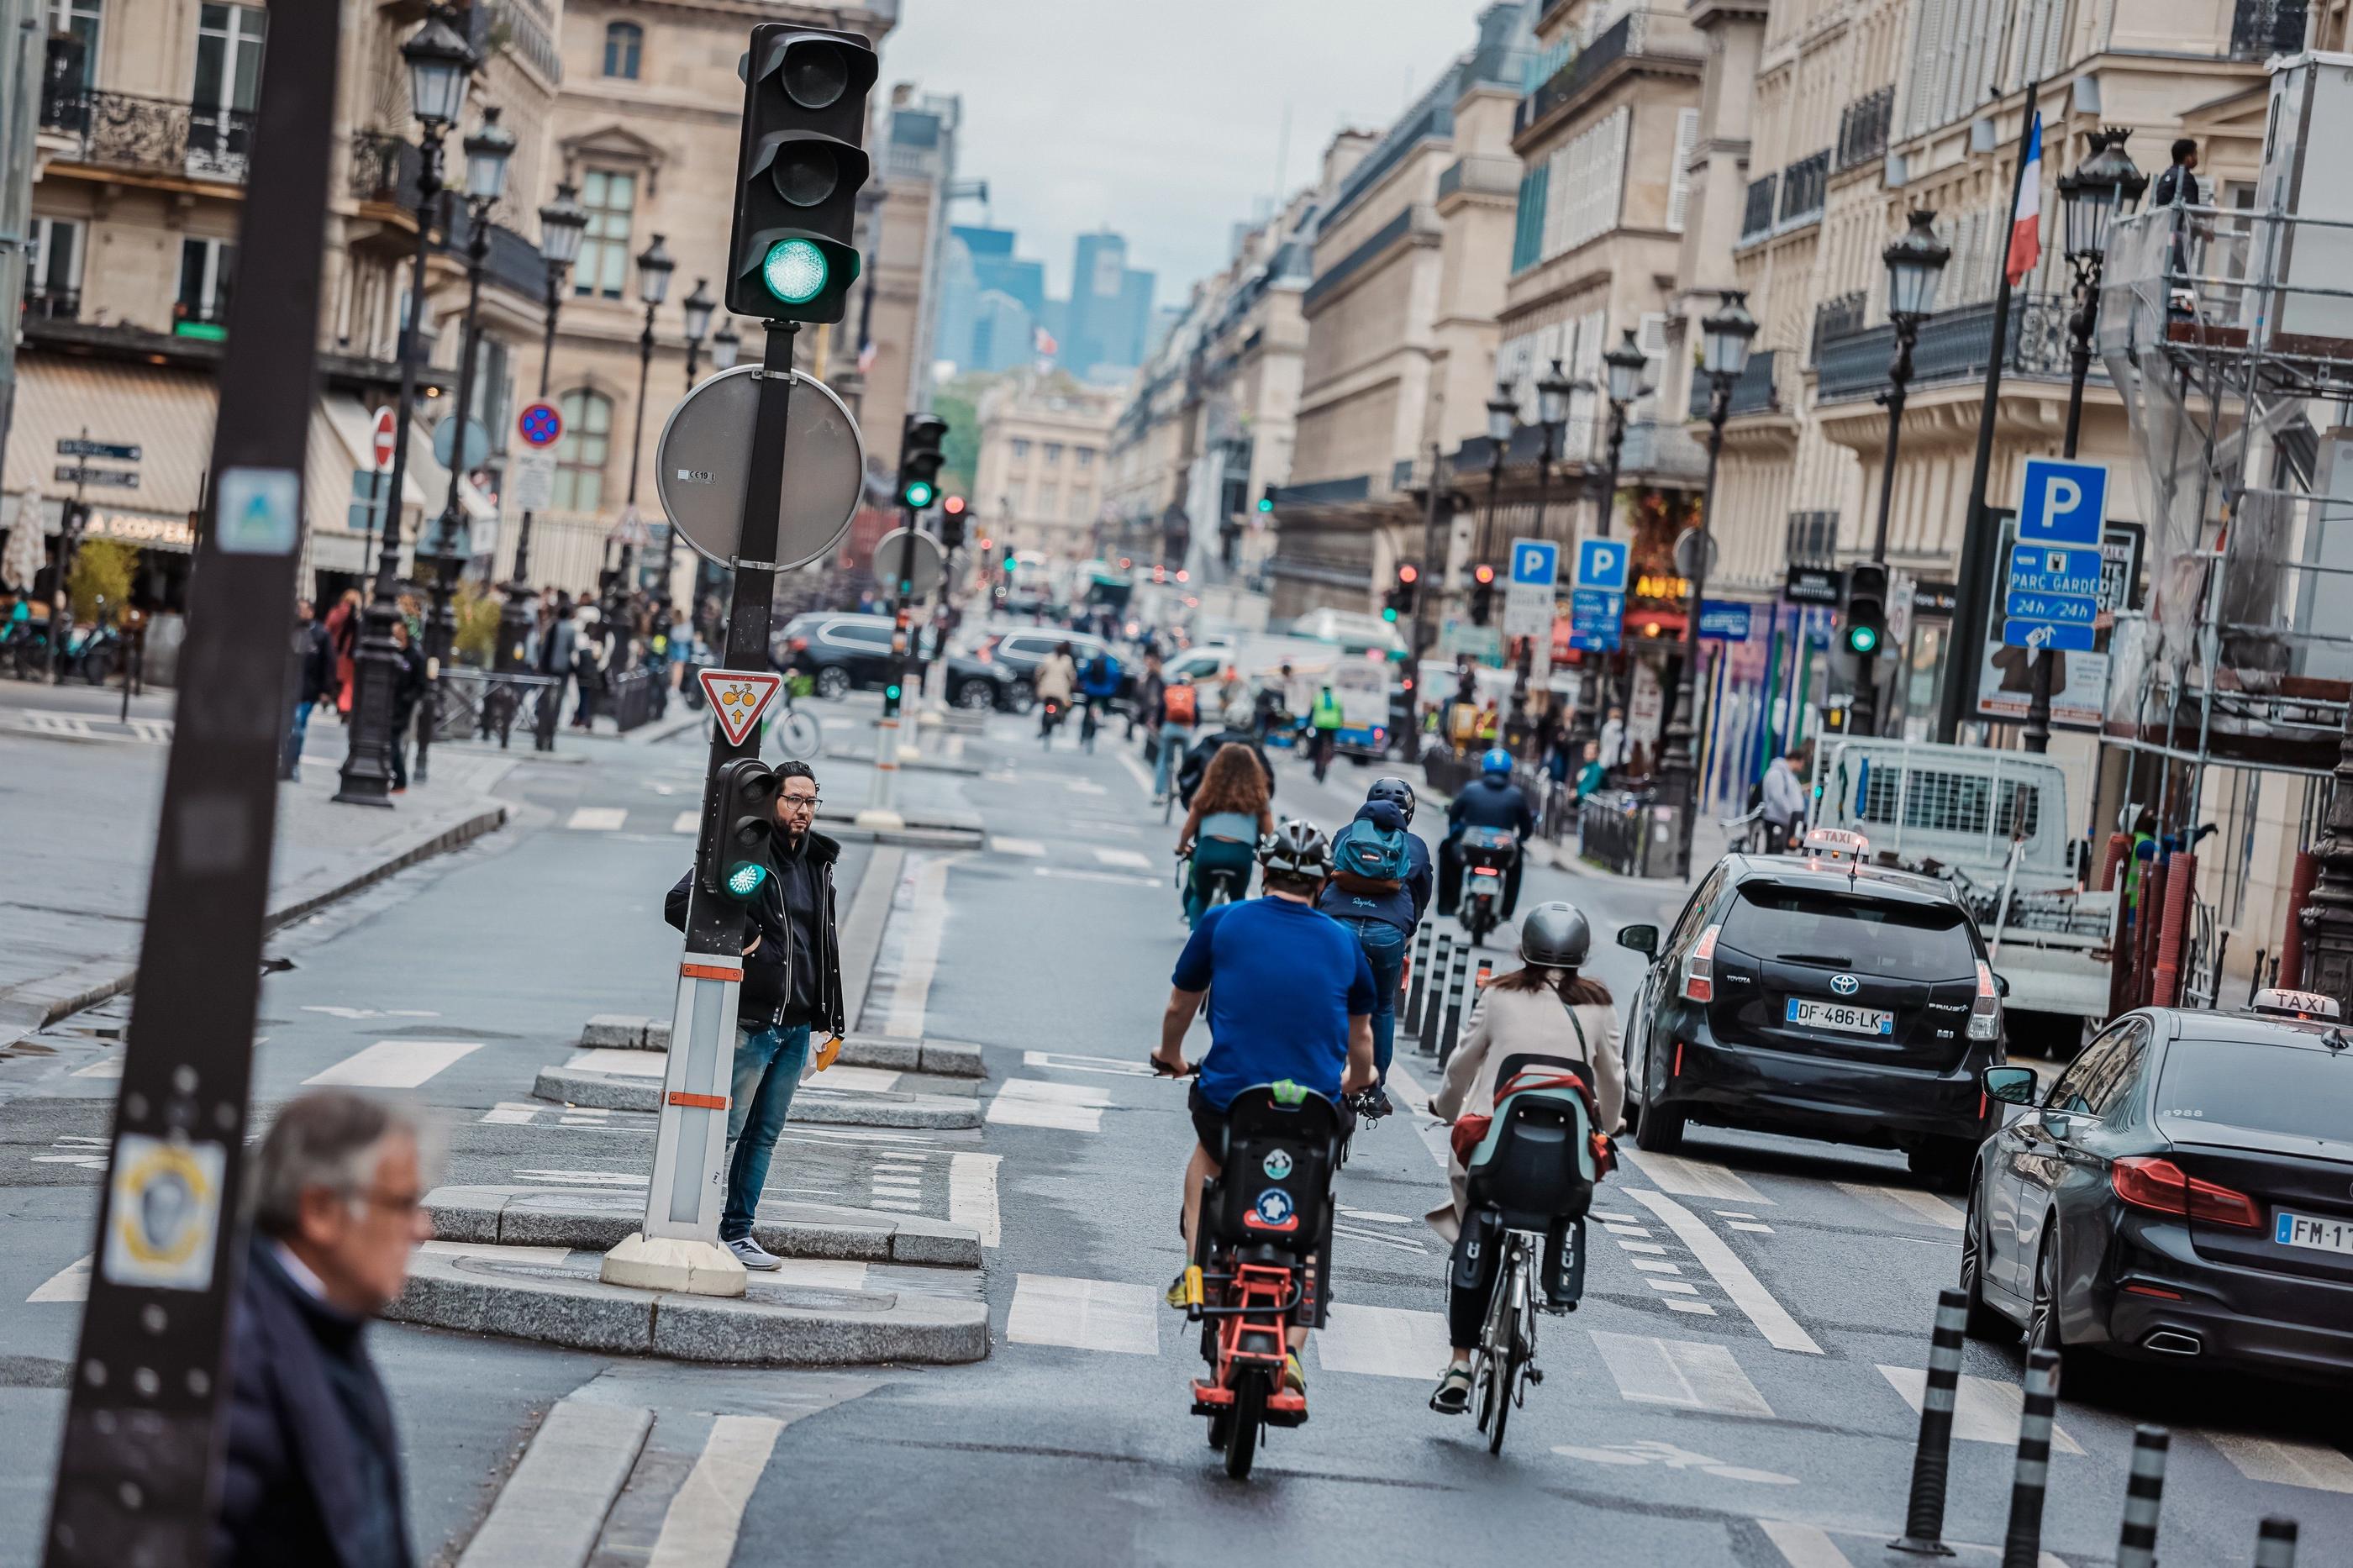 L’arrêté de la Ville de Paris interdit actuellement l’accès des véhicules Uber aux rues de Rivoli et Saint-Antoine, alors que ce même accès est autorisé aux taxis de la capitale. LP/Enzo Sultan